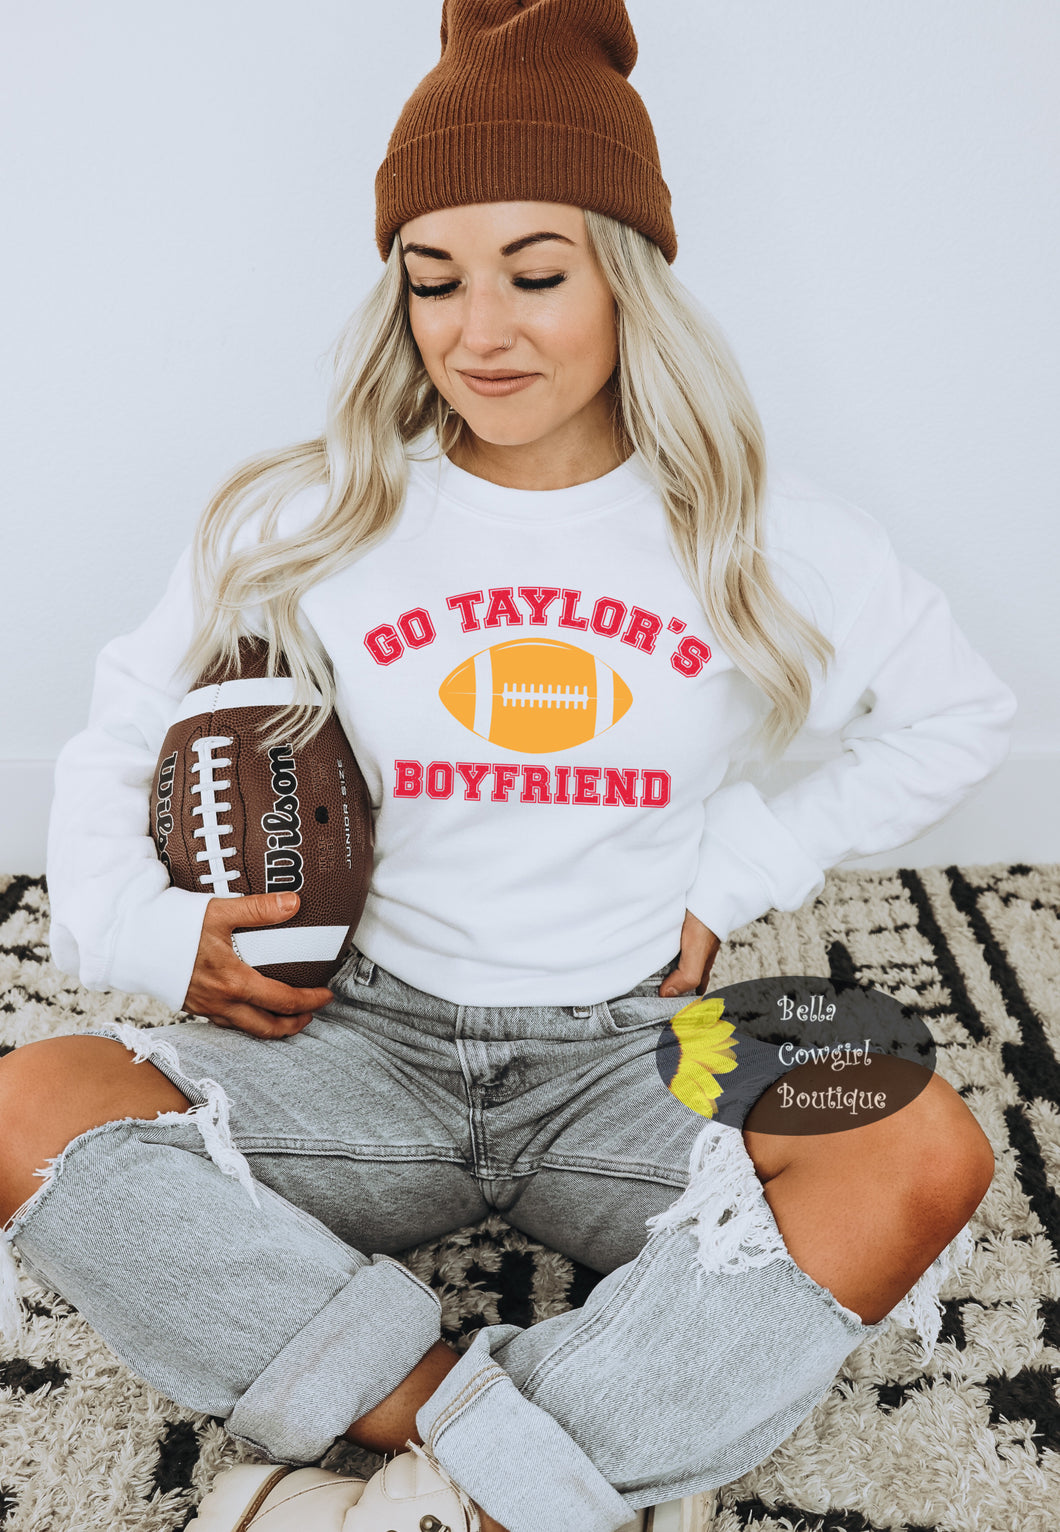 Go Taylor's Boyfriend Funny Football Sweatshirt